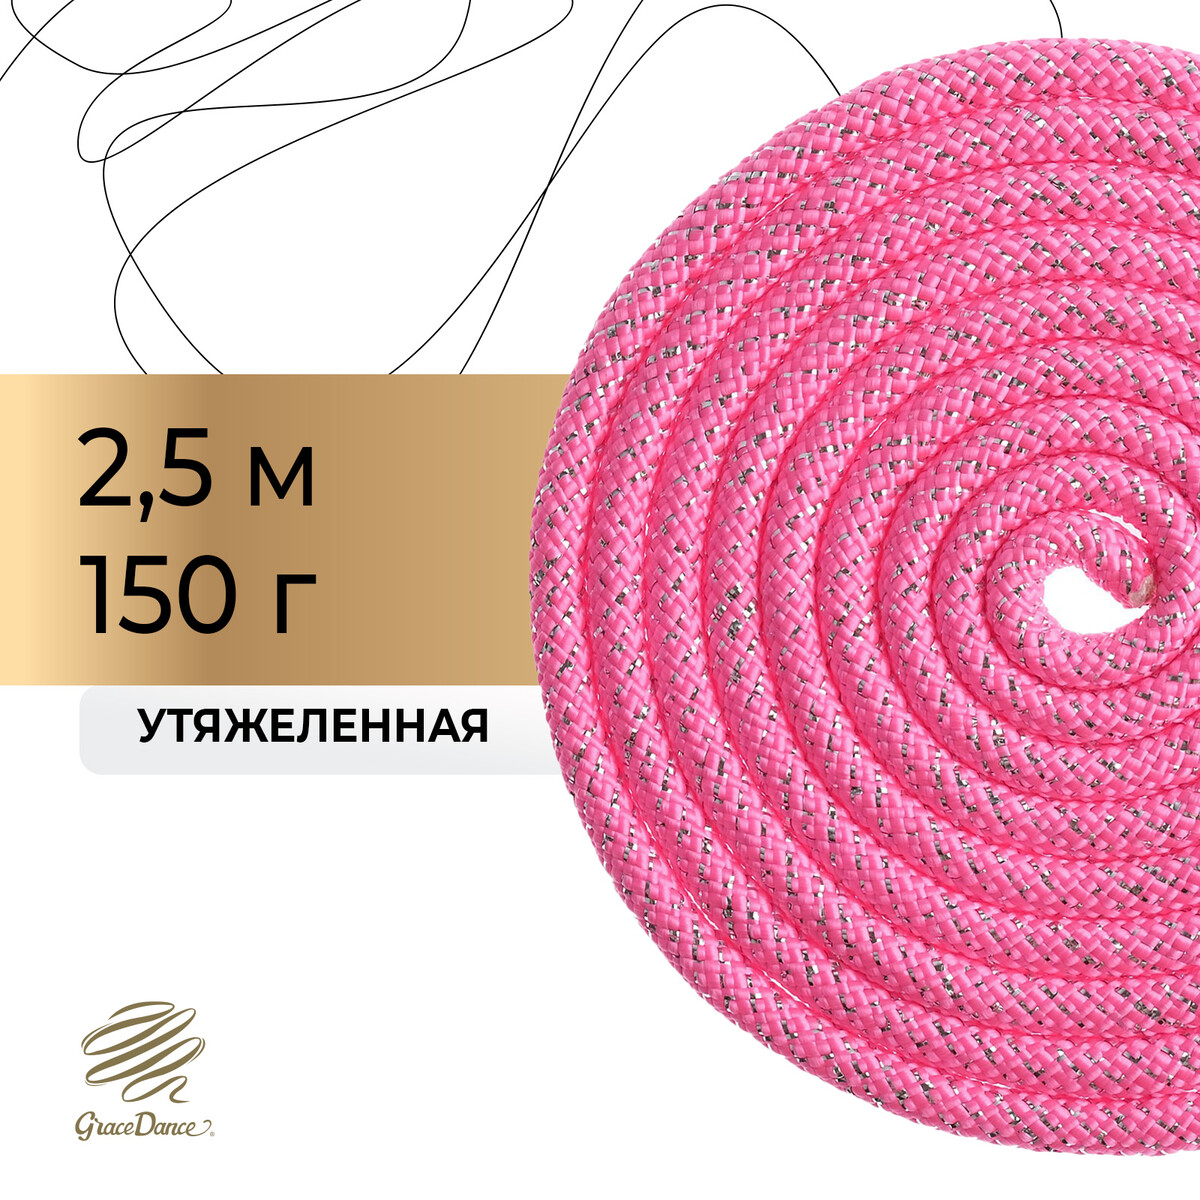 Скакалка для художественной гимнастики утяжеленная grace dance, 2,5 м,цвет розовый